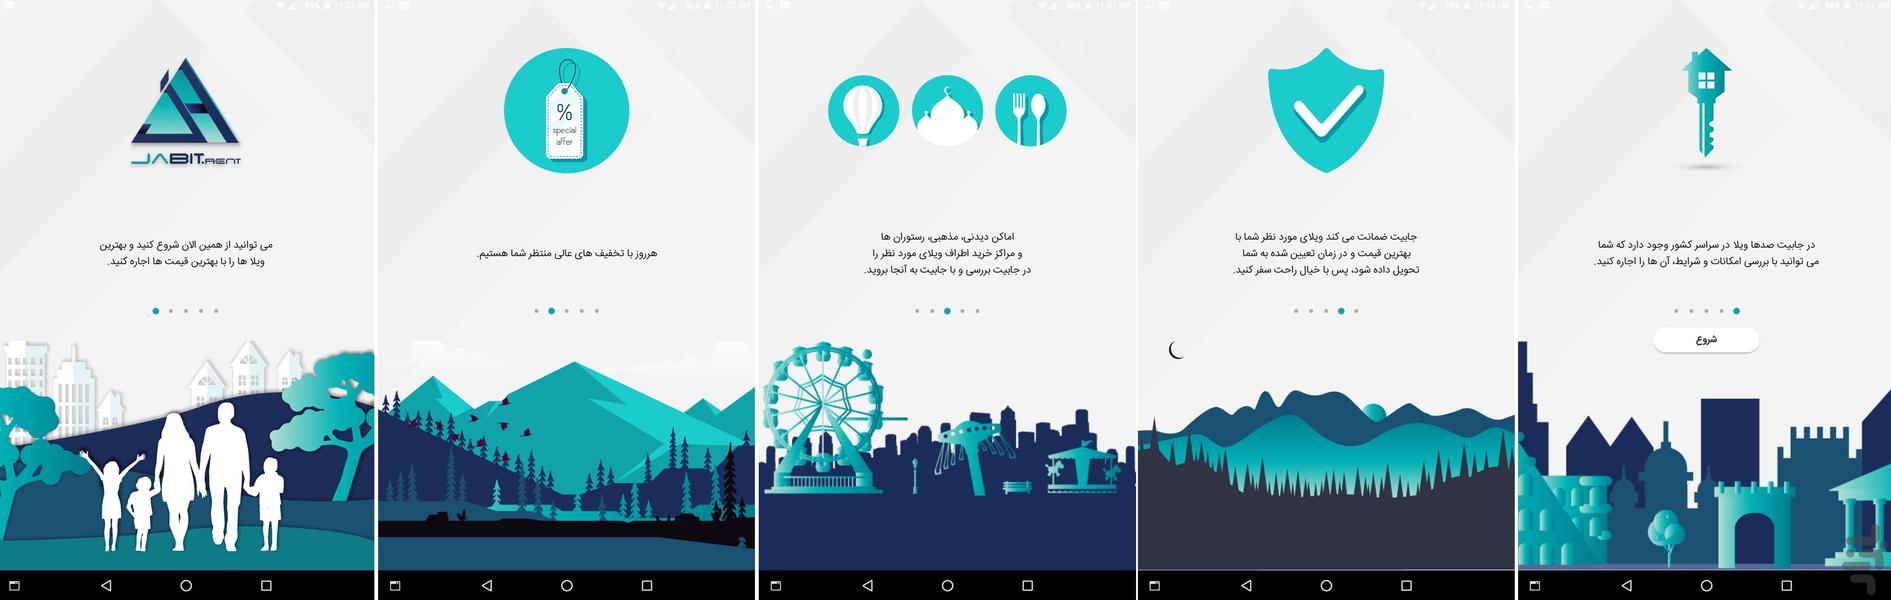 Jabit - Image screenshot of android app